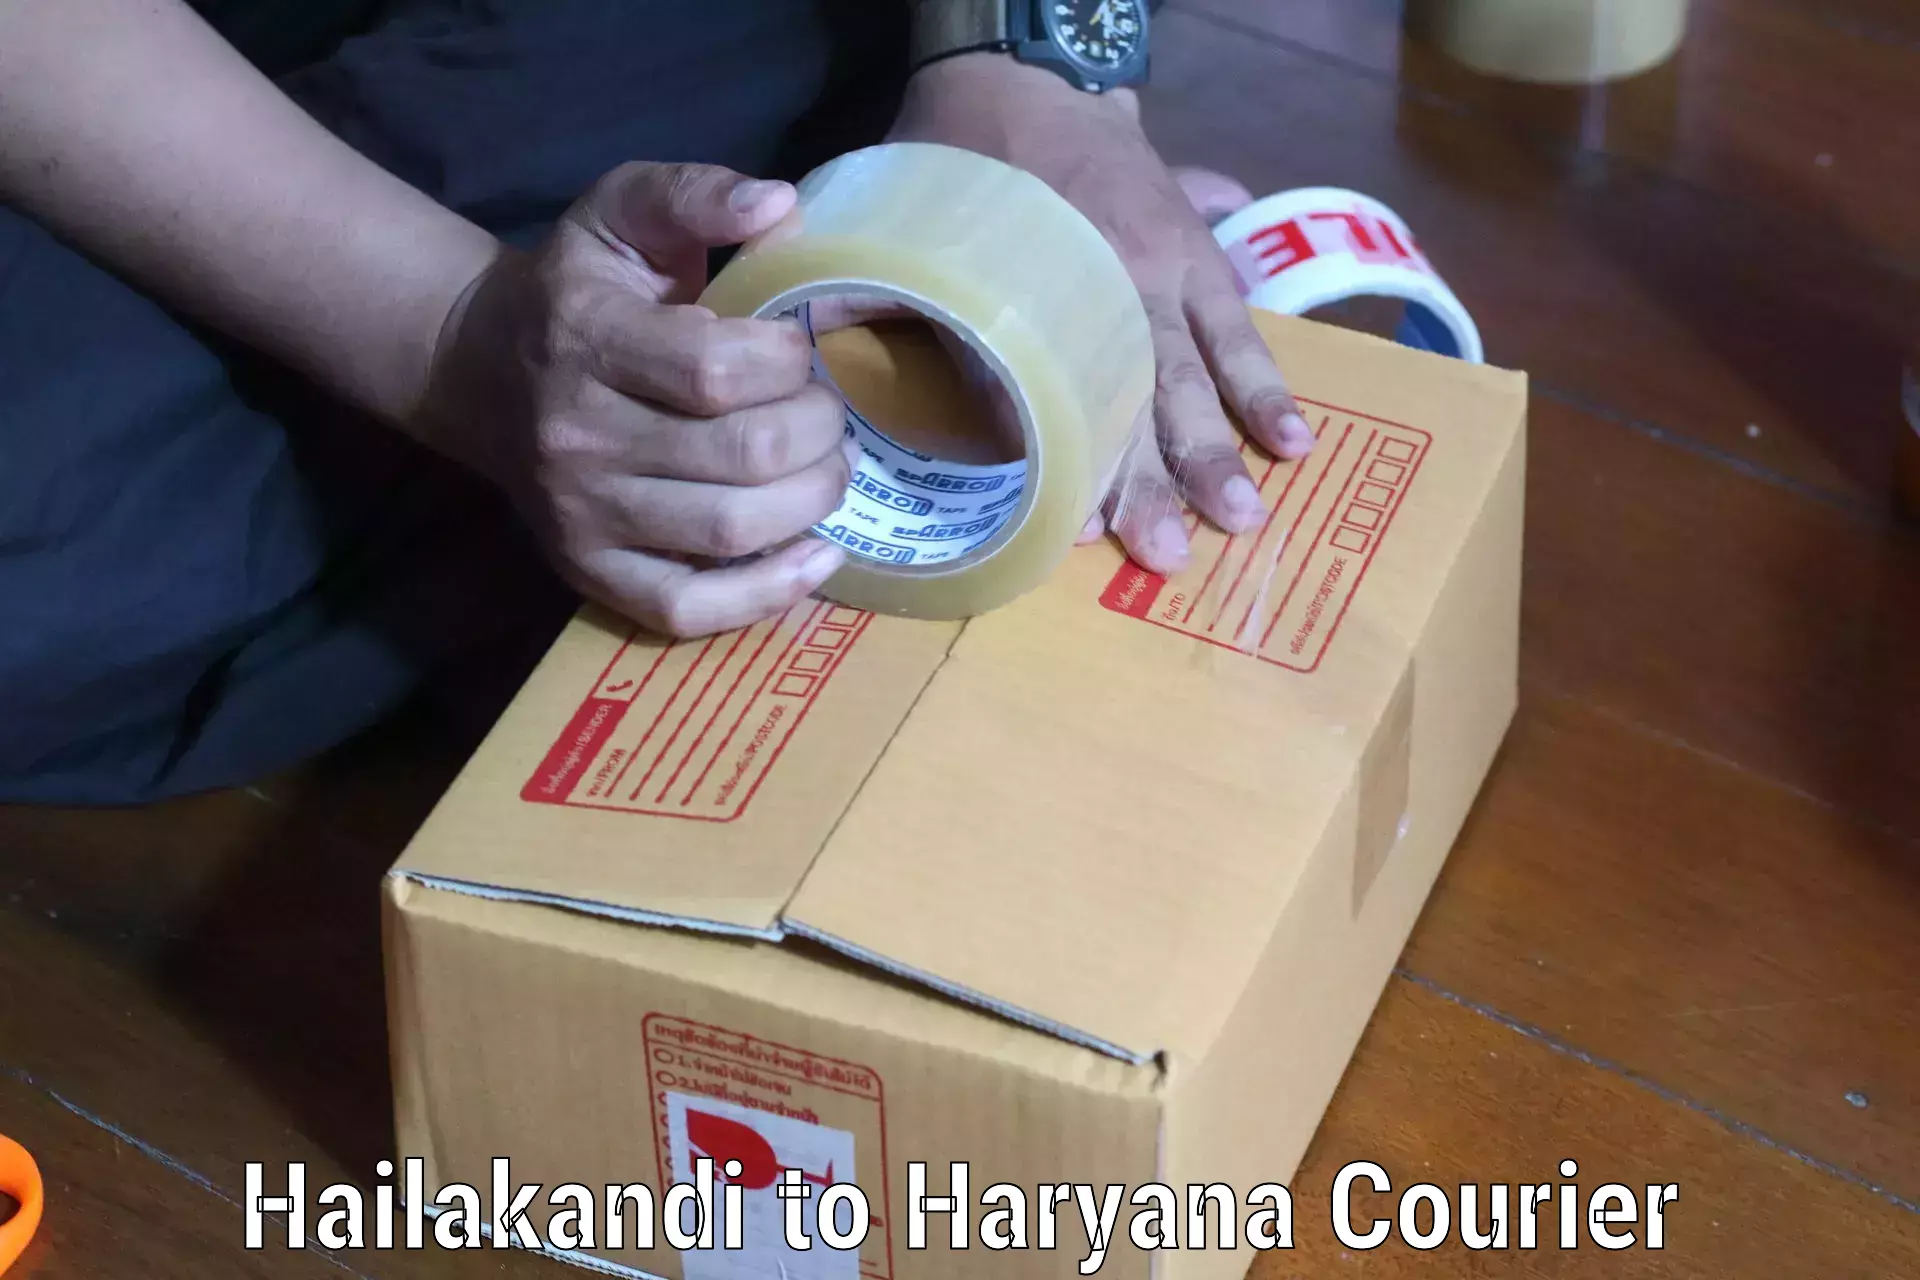 High-speed parcel service Hailakandi to Haryana